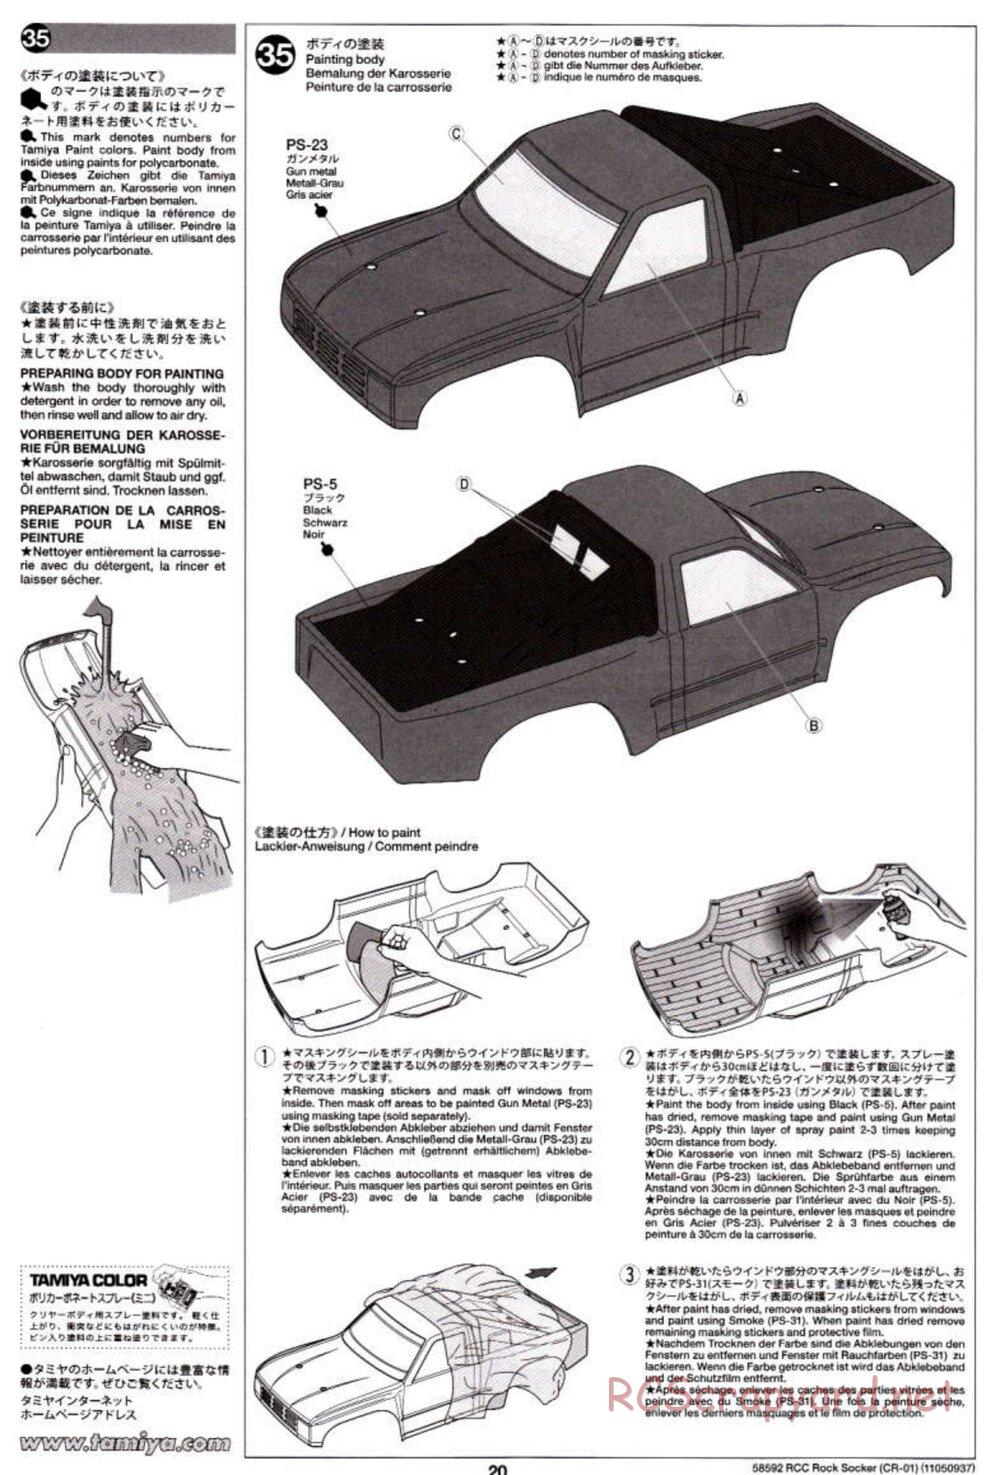 Tamiya - Rock Socker - CR-01 Chassis - Manual - Page 20